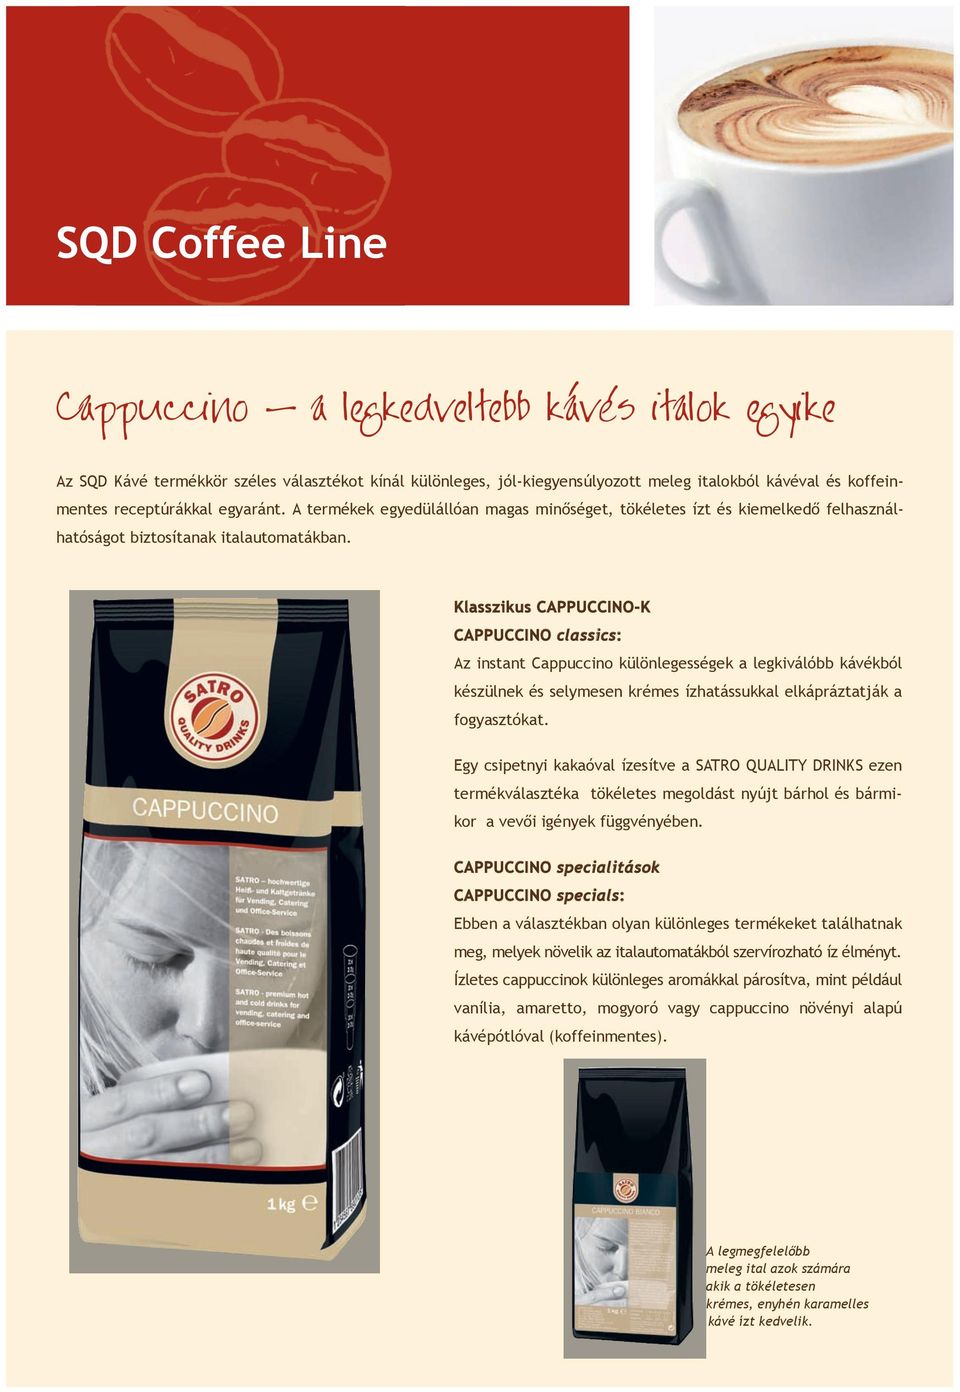 Klasszikus CAPPUCCINO-K CAPPUCCINO classics: Az instant Cappuccino különlegességek a legkiválóbb kávékból készülnek és selymesen krémes ízhatássukkal elkápráztatják a fogyasztókat.